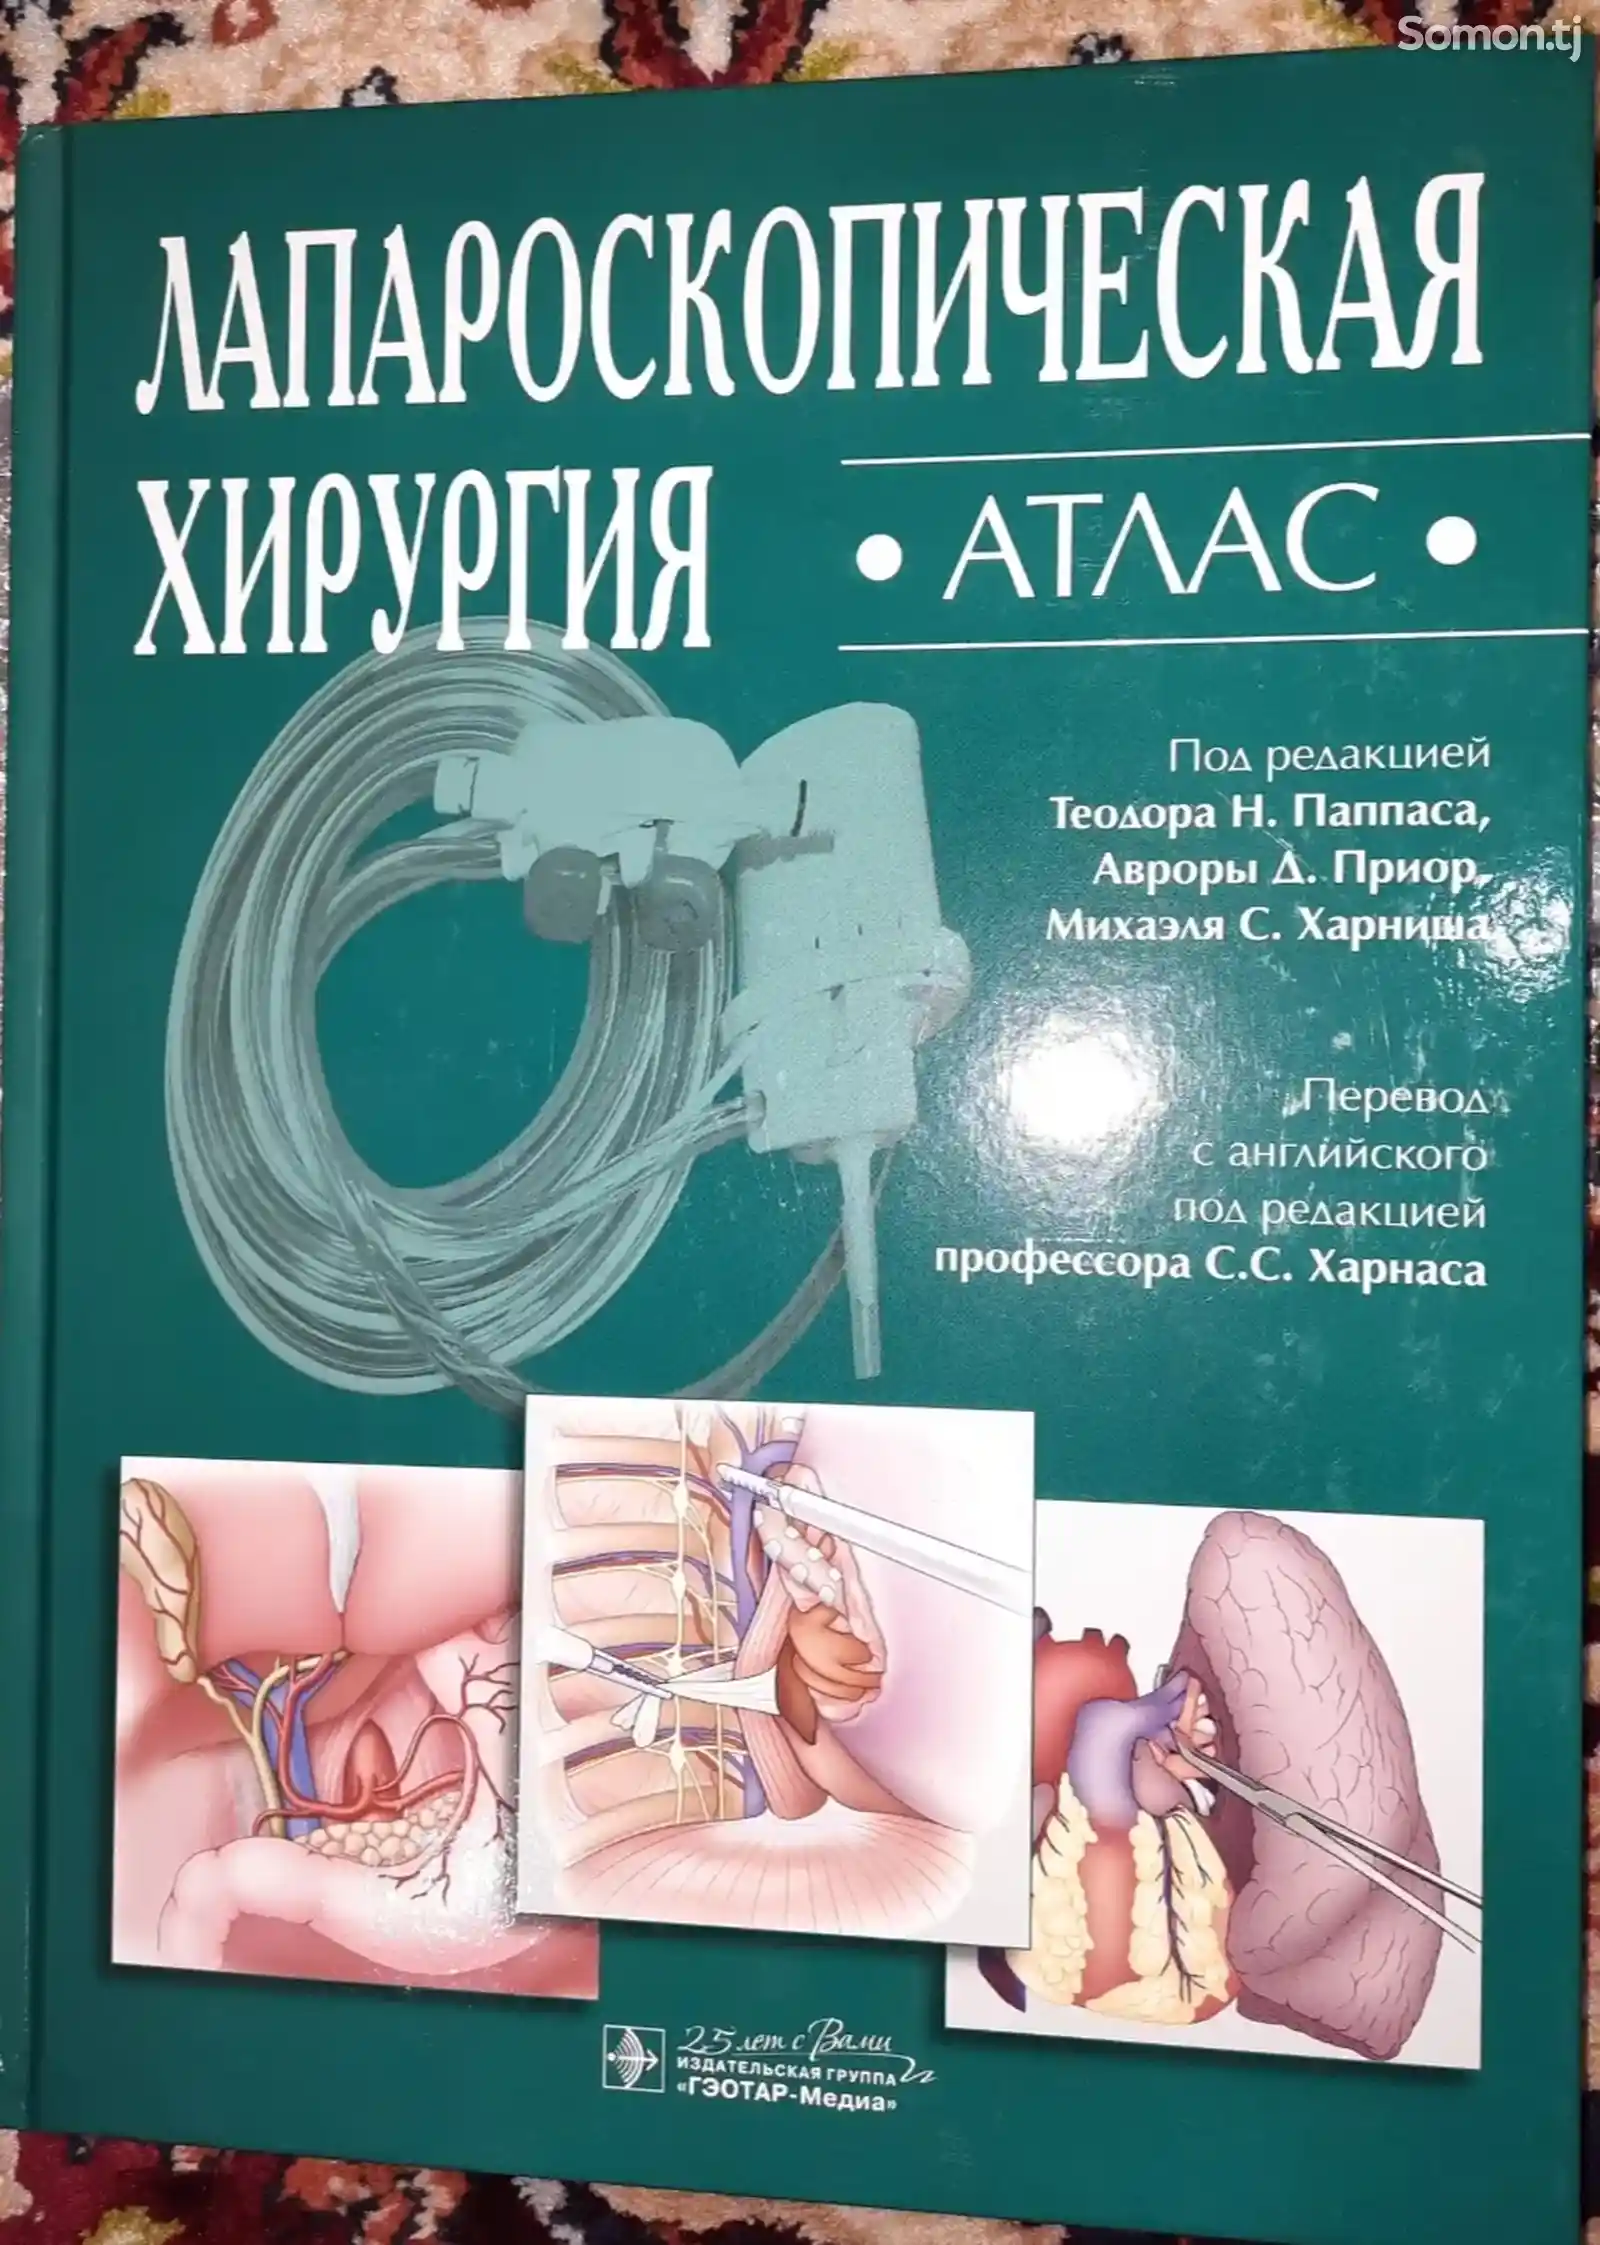 Книга Атлас лапароскопической хирургии